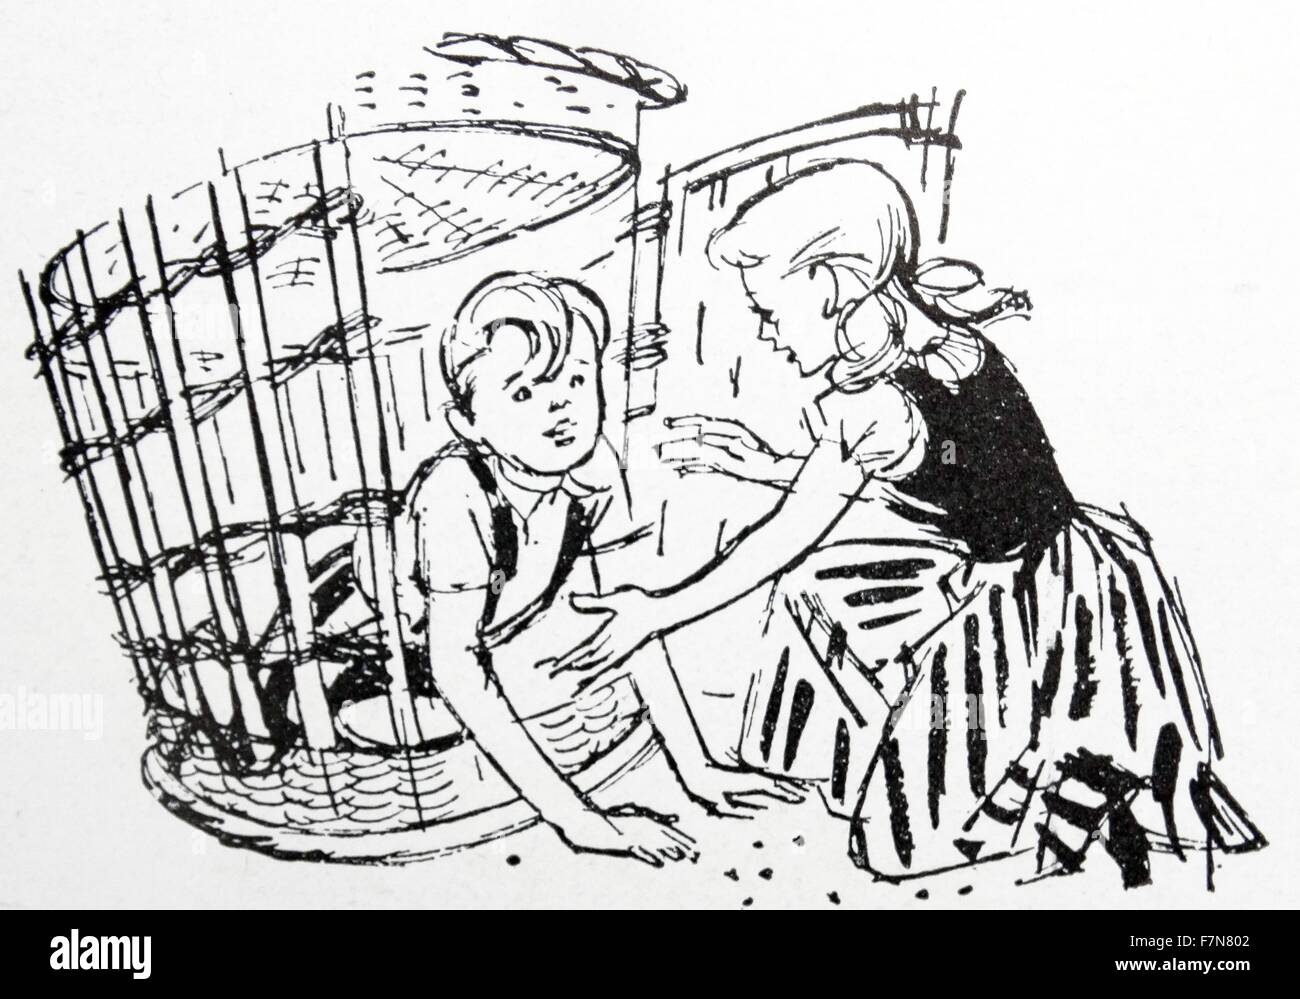 Hansel et Gretel conte d'origine allemande, par les frères Grimm publié en 1812. Hansel et Gretel sont un jeune frère et sœur menacée par une sorcière anthropophage vivant profondément dans la forêt dans une maison construite de gâteau et de la confiserie Banque D'Images